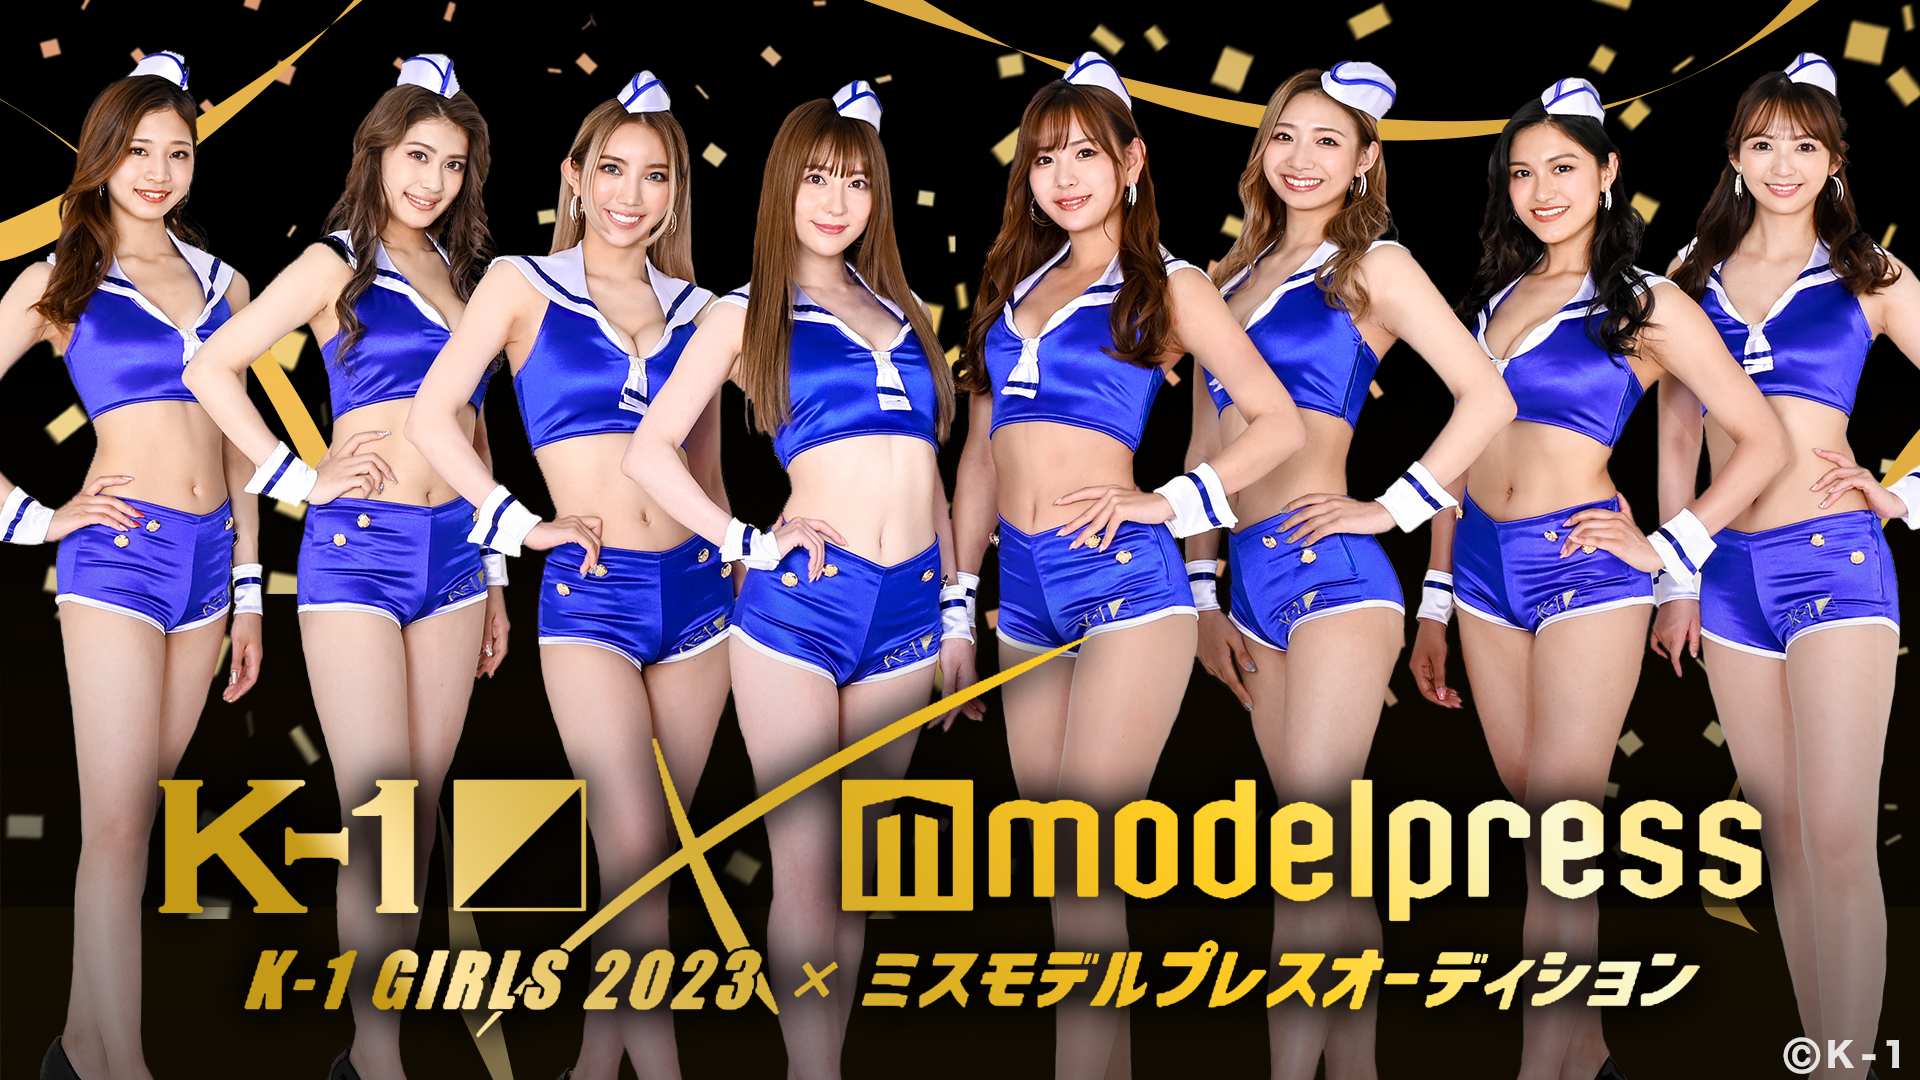 K-1 GIRLS 2023 × ミスモデルプレス オーディション